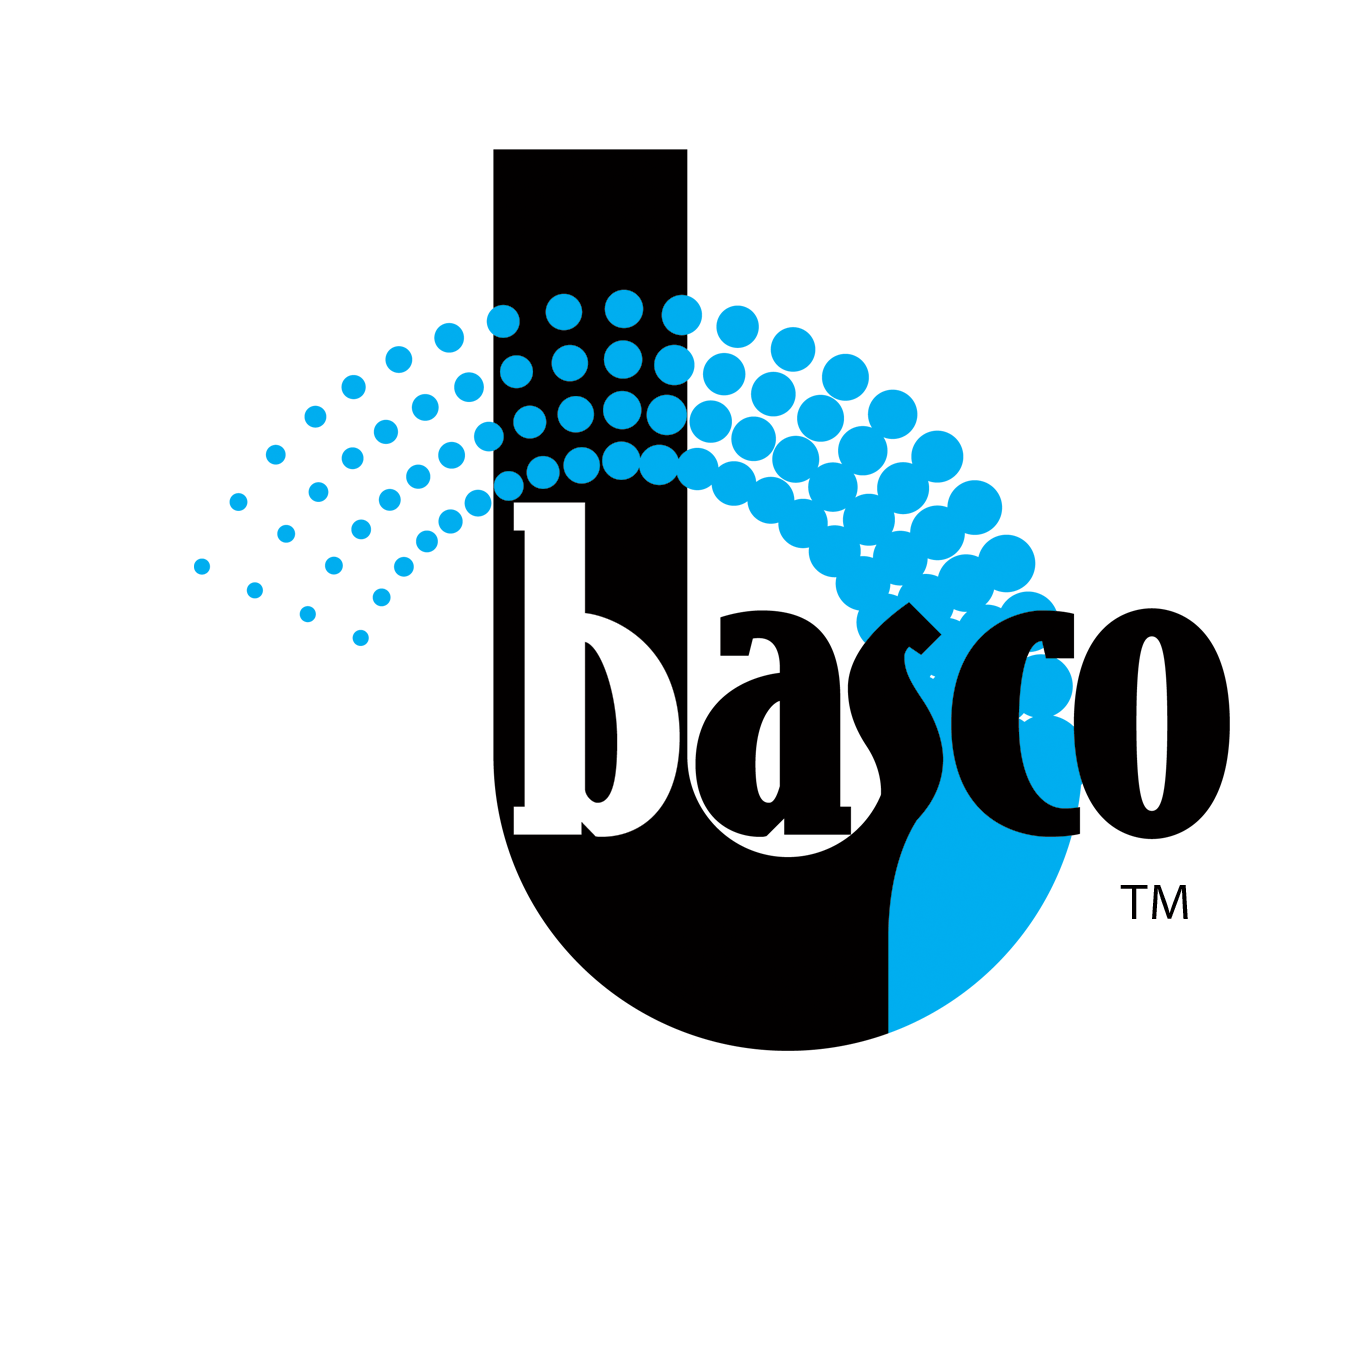 Basco Calgary Window Repair & Glass Replacement's logo